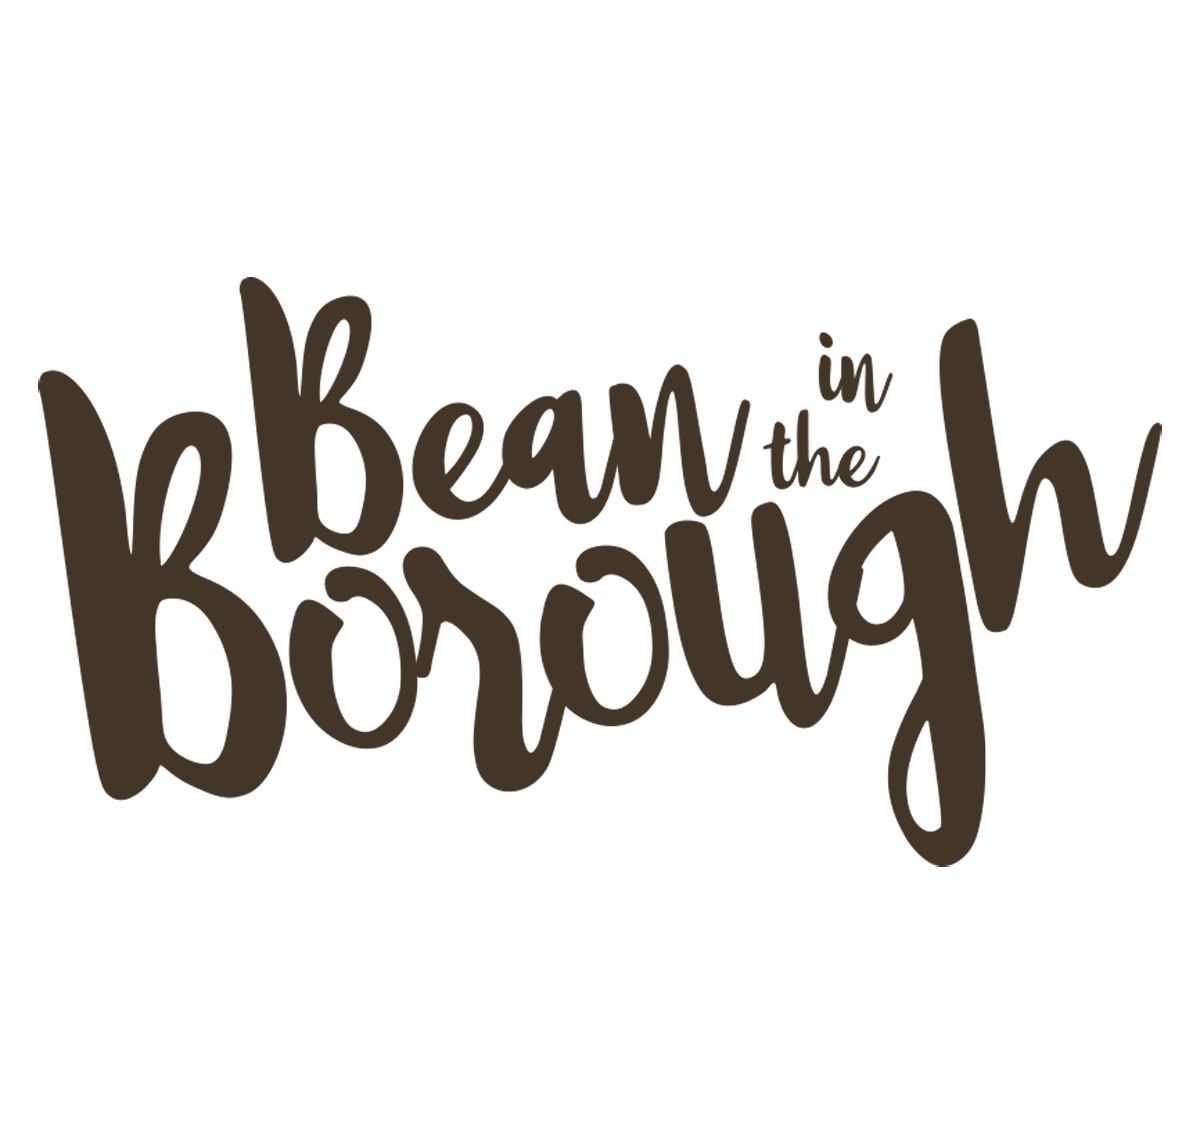 Bean in the Borough